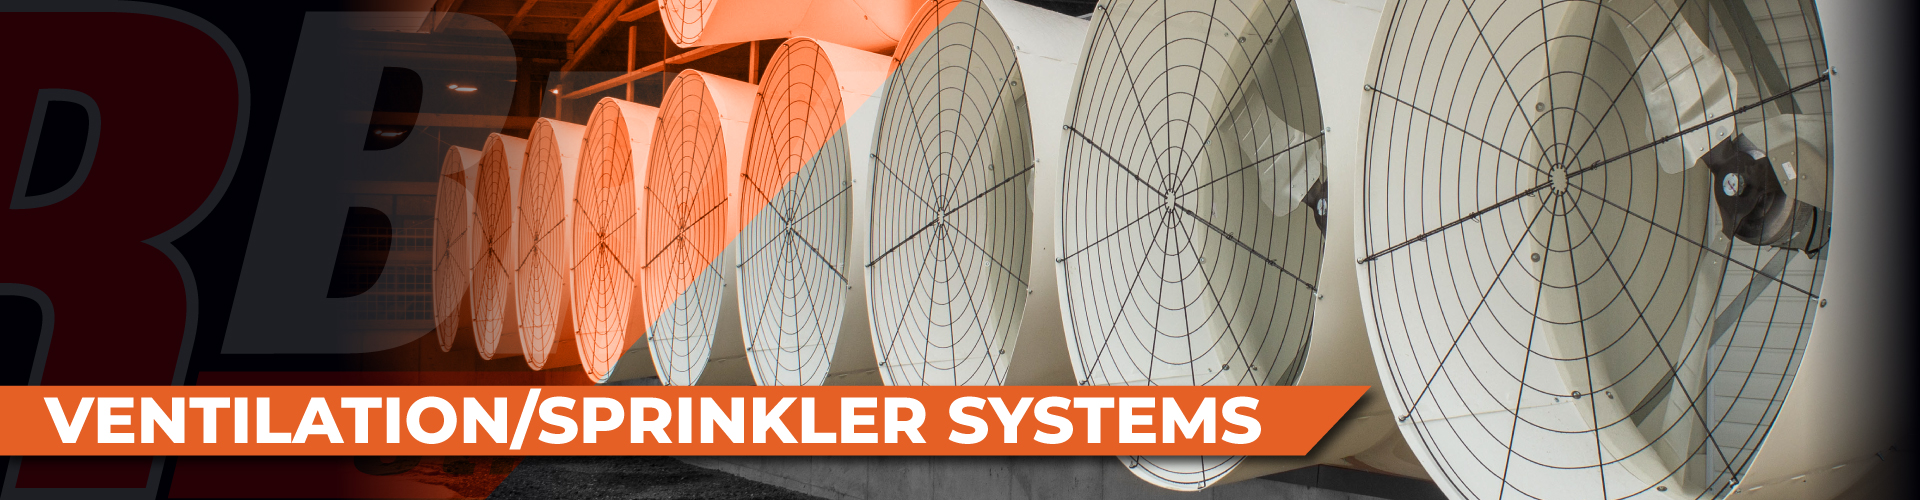 Ventilation Sprinkler Systems Banner